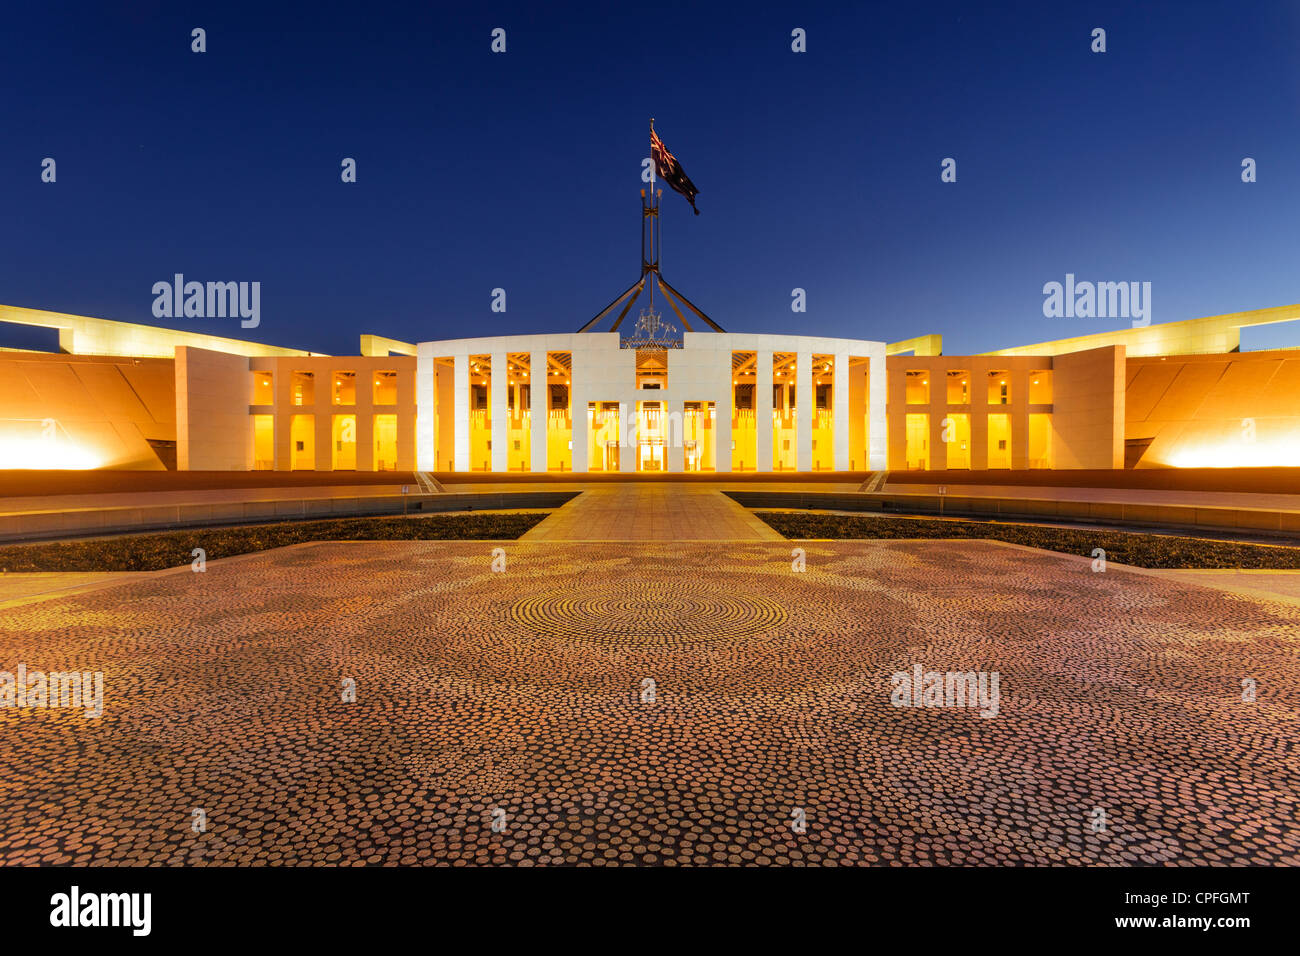 Parliament House, Canberra, Australien, in der Dämmerung beleuchtet. Aborigine-Mosaik im Vordergrund, ist australische Flagge. Stockfoto